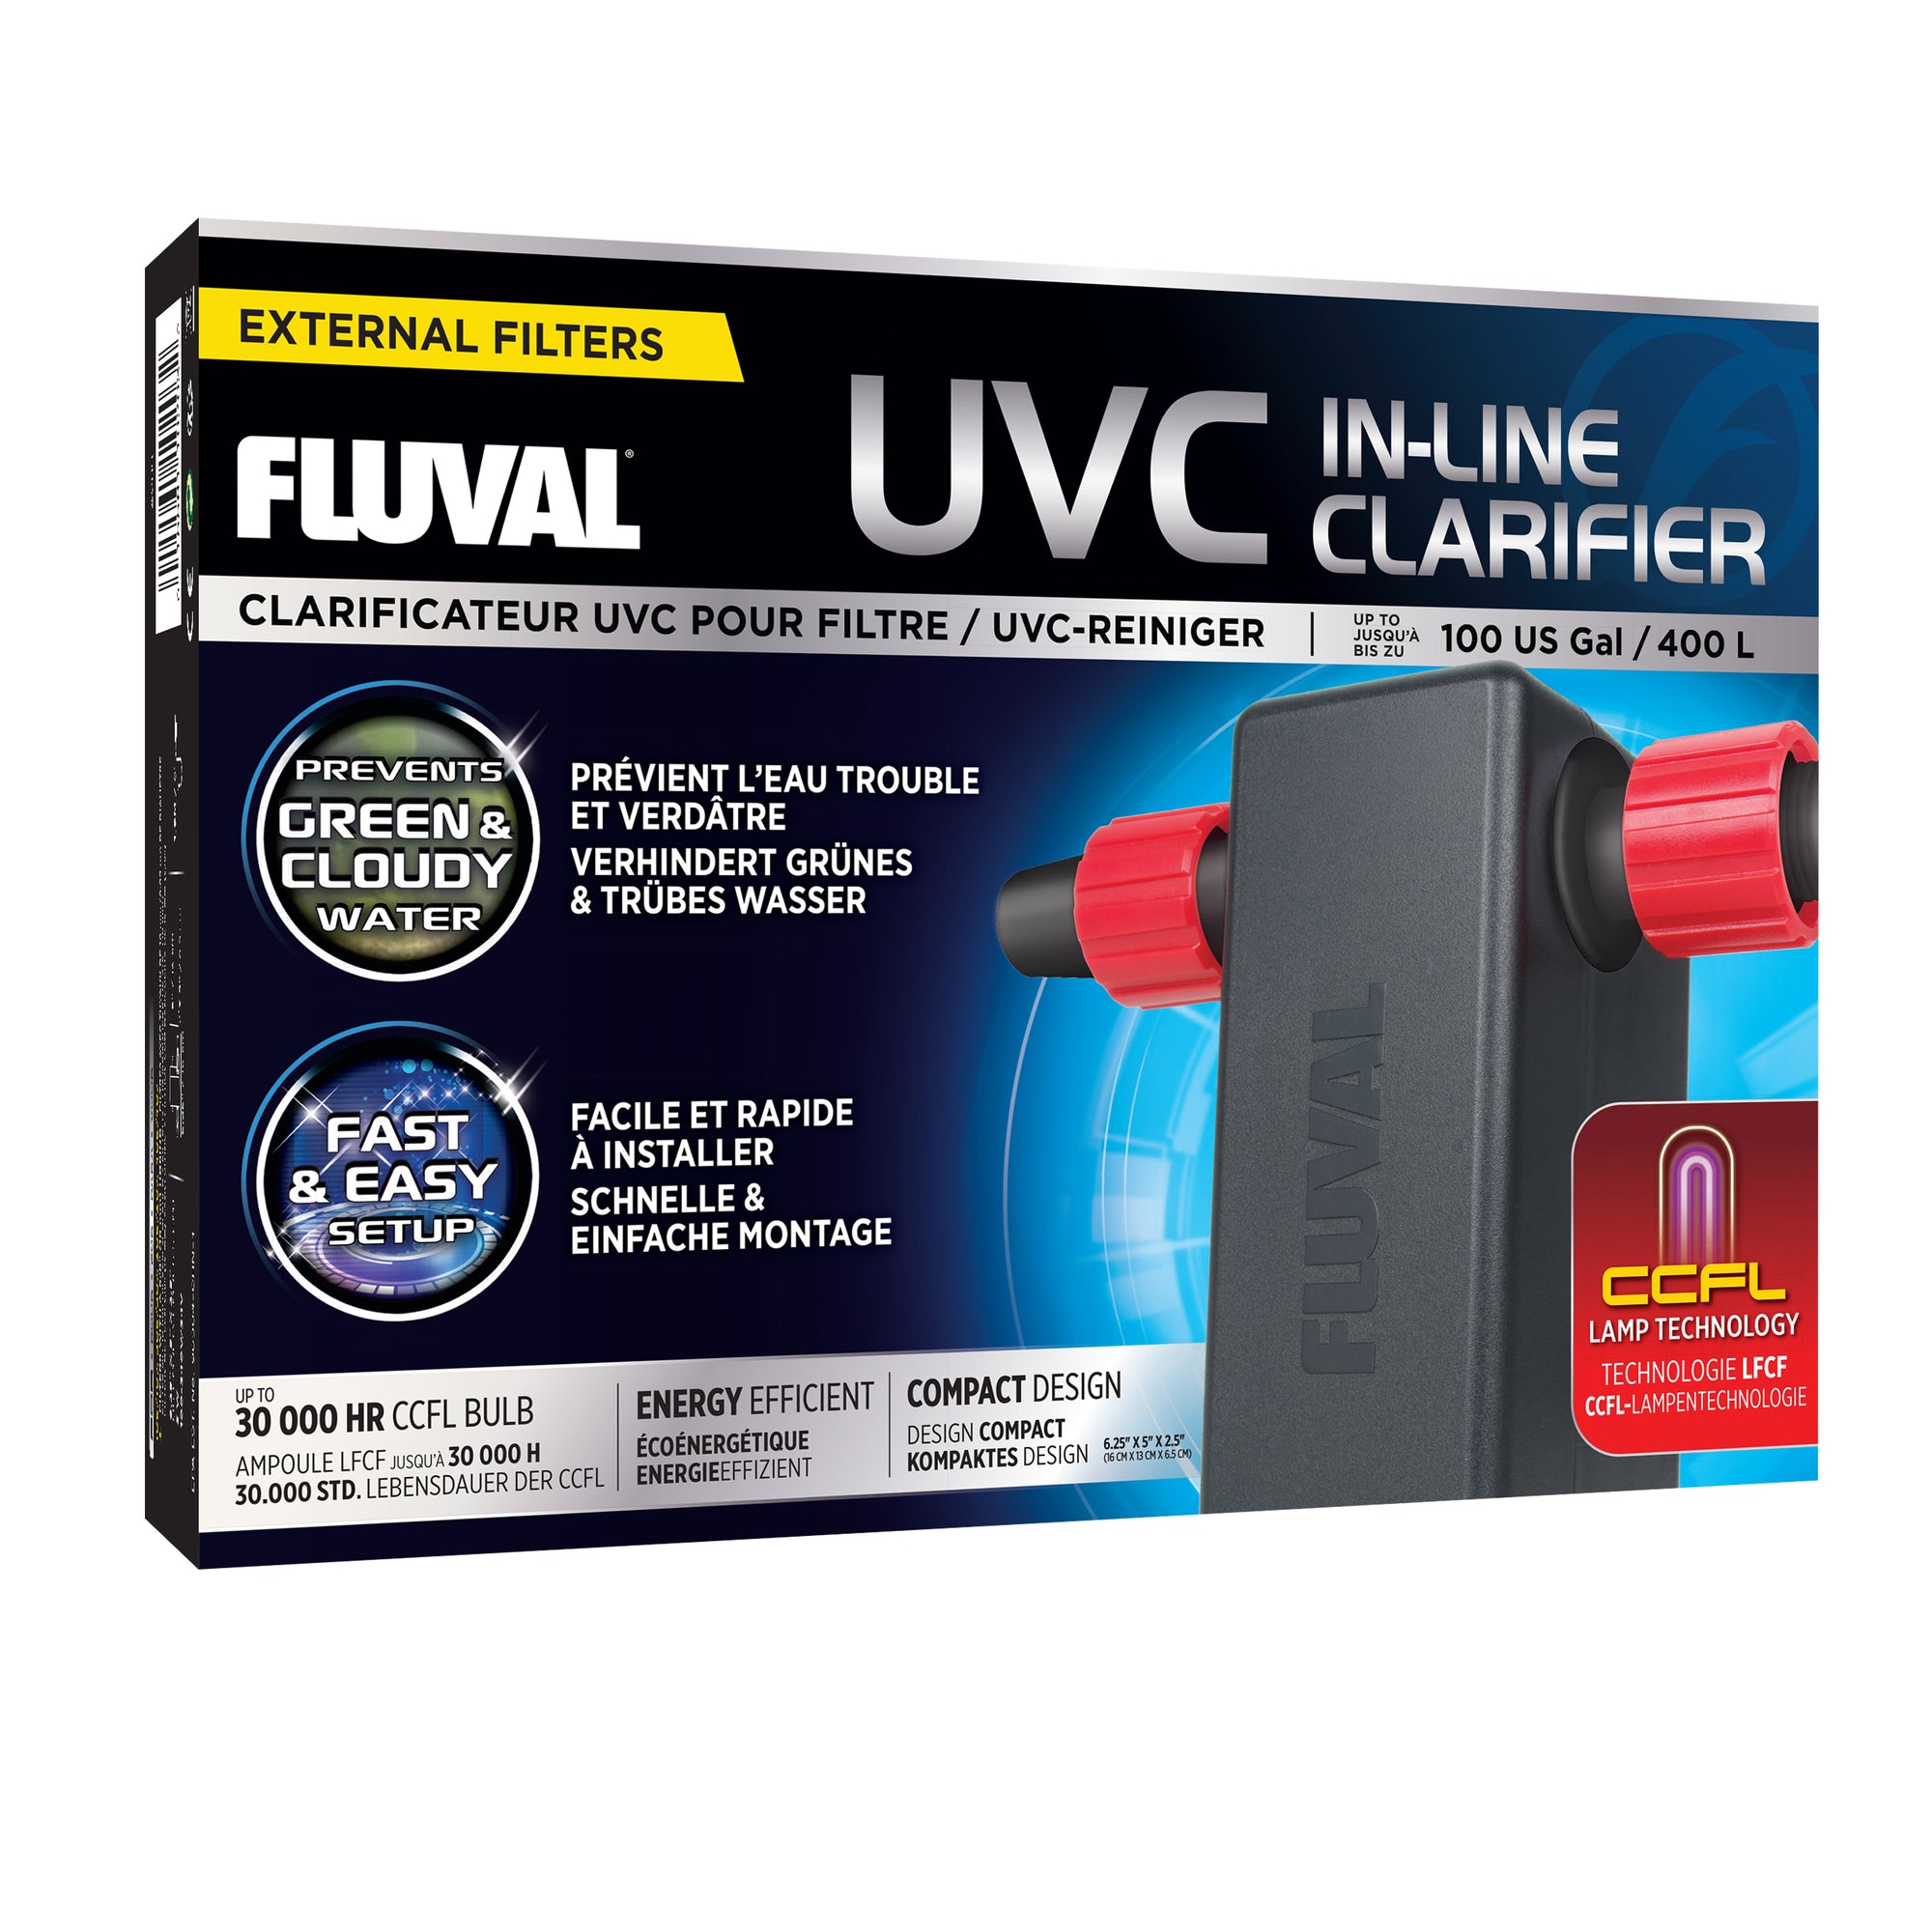 Clarificateur UVC Fluval pour filtre, jusqu’à 400 L (100 gal US)